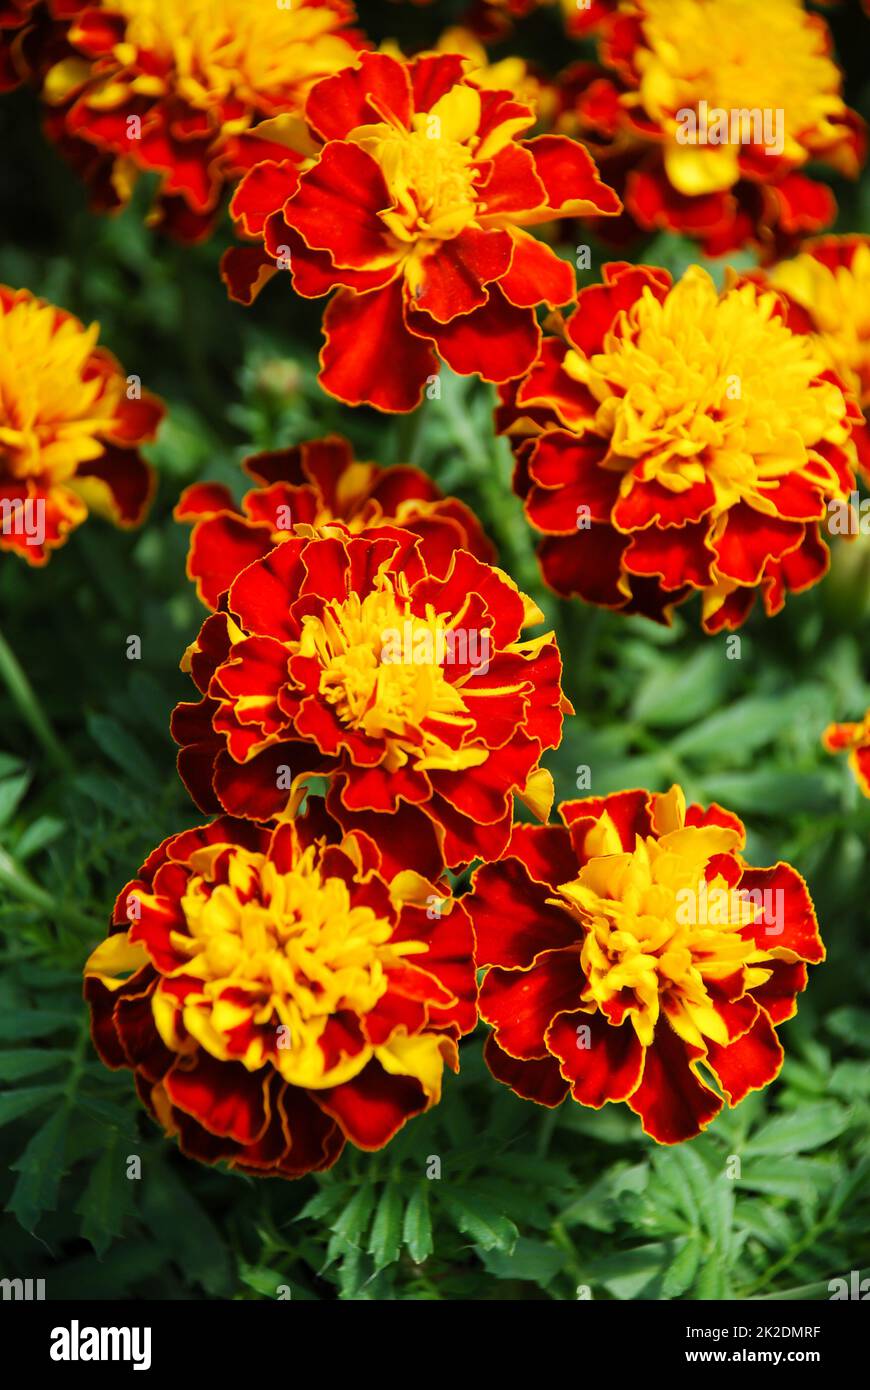 Tagetes patula marigold français en fleur, fleurs orange jaune, feuilles vertes Banque D'Images